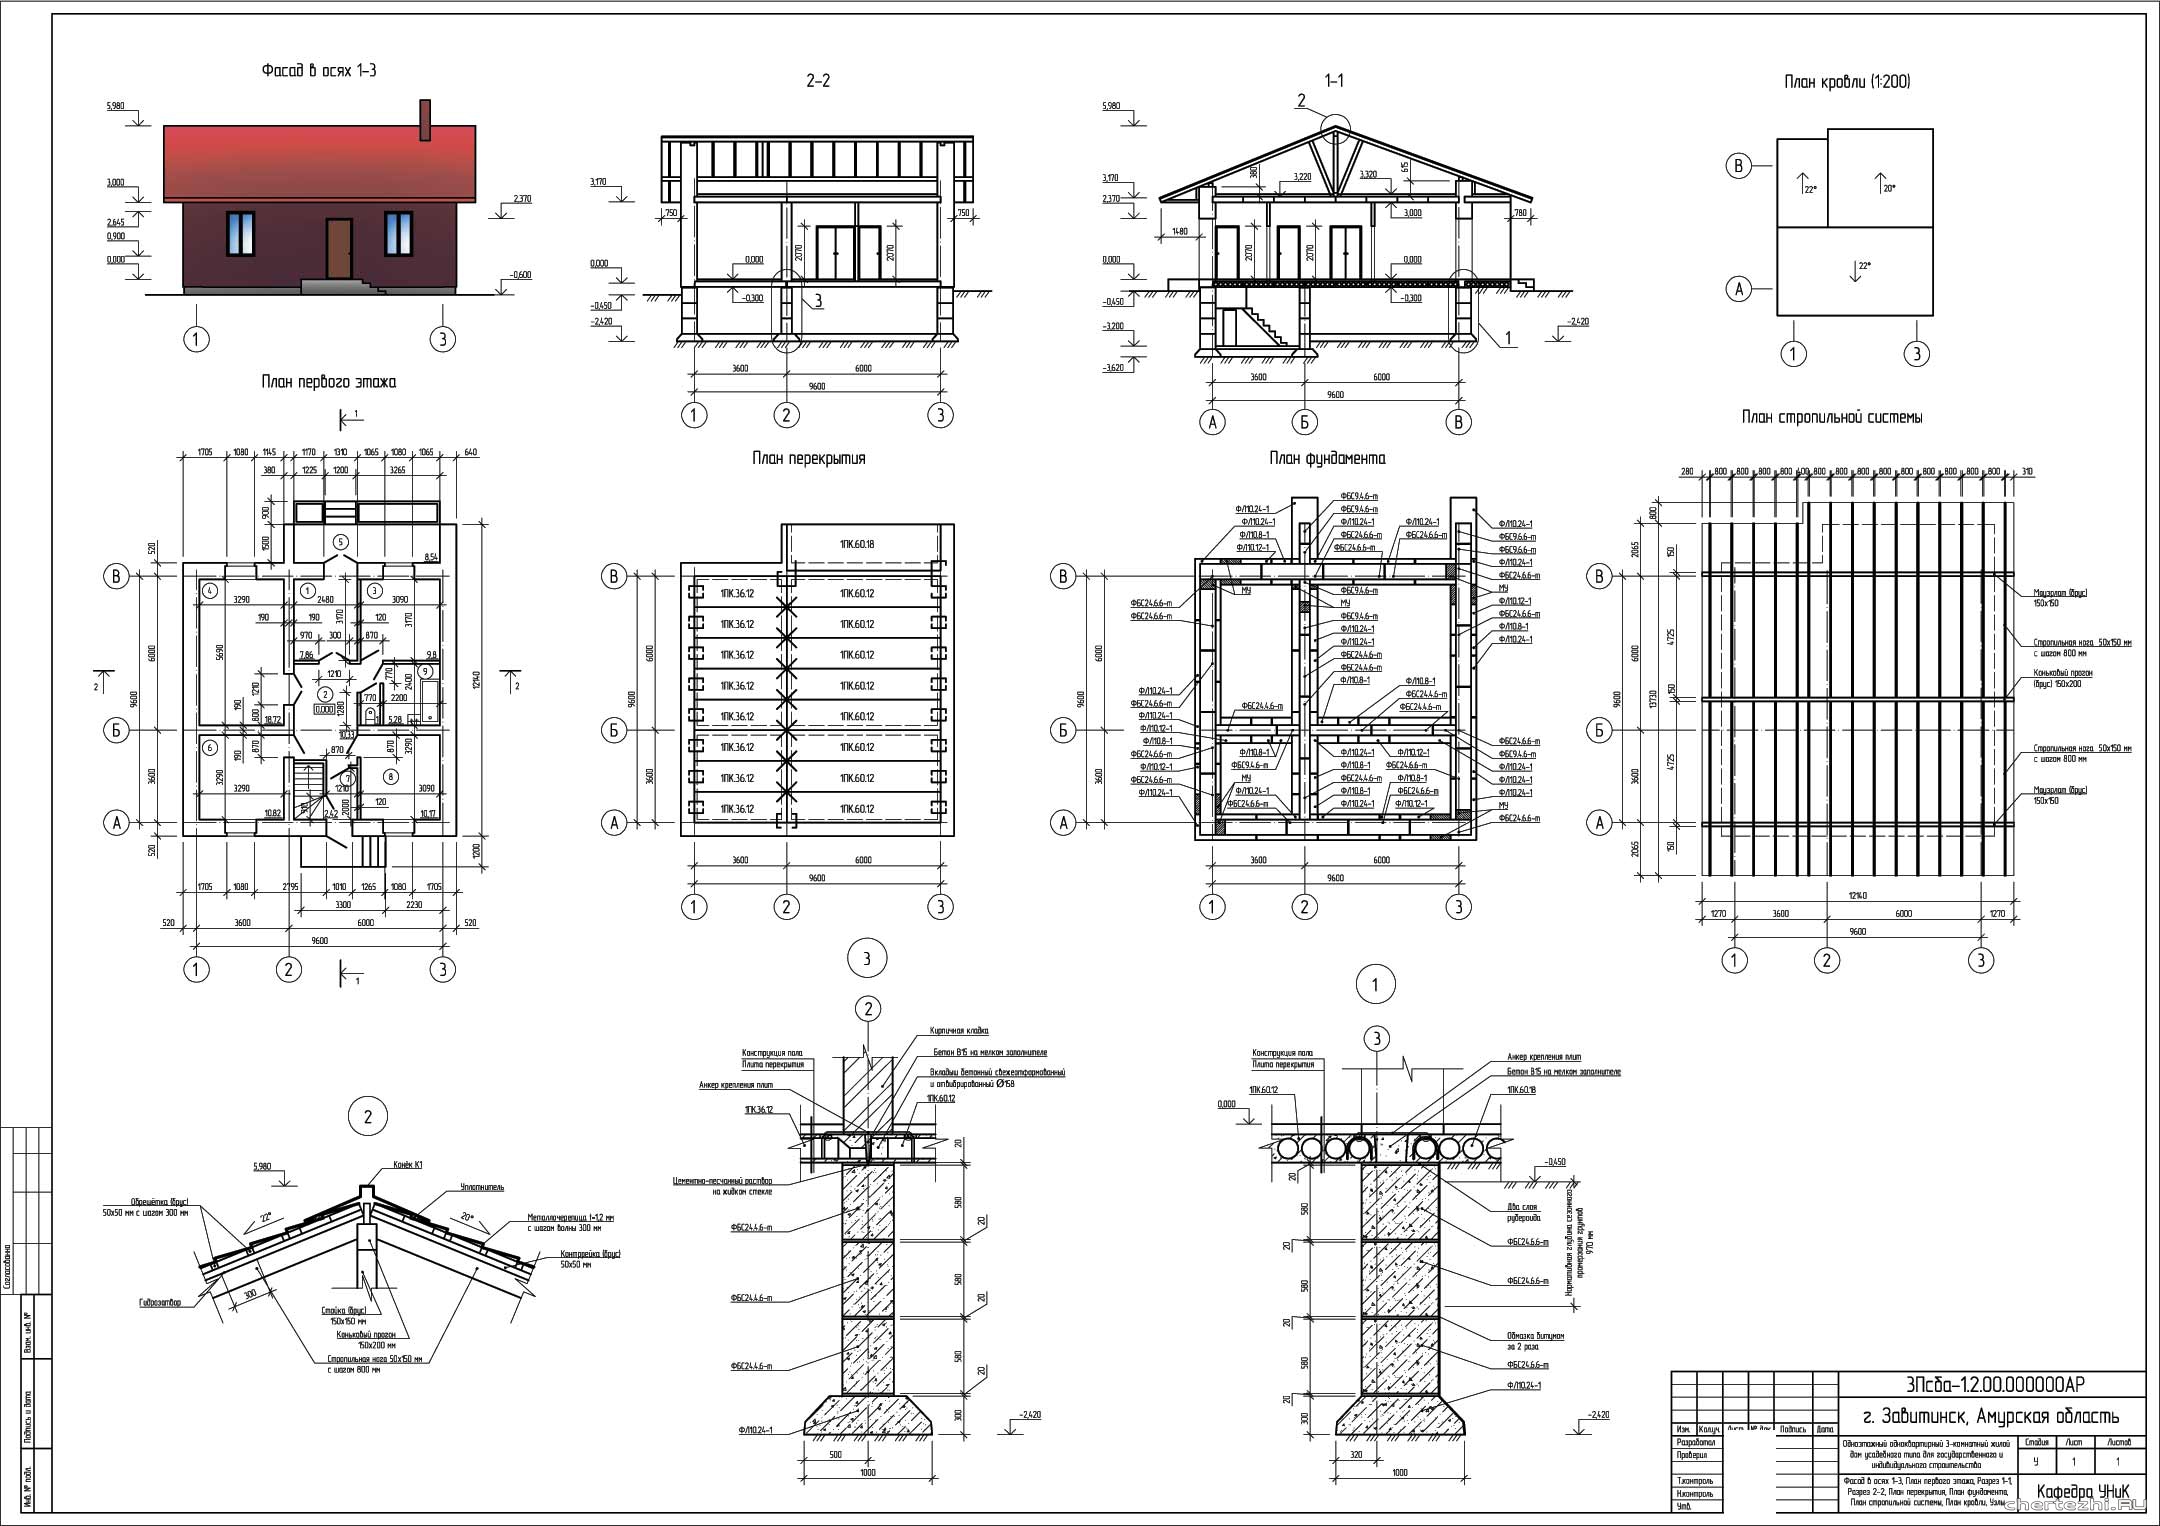 Курсовой проект - Одноэтажный одноквартирный 3 - х комнатный жилой дом усадебного типа 9,6 х 9,6 м в г. Завитинск